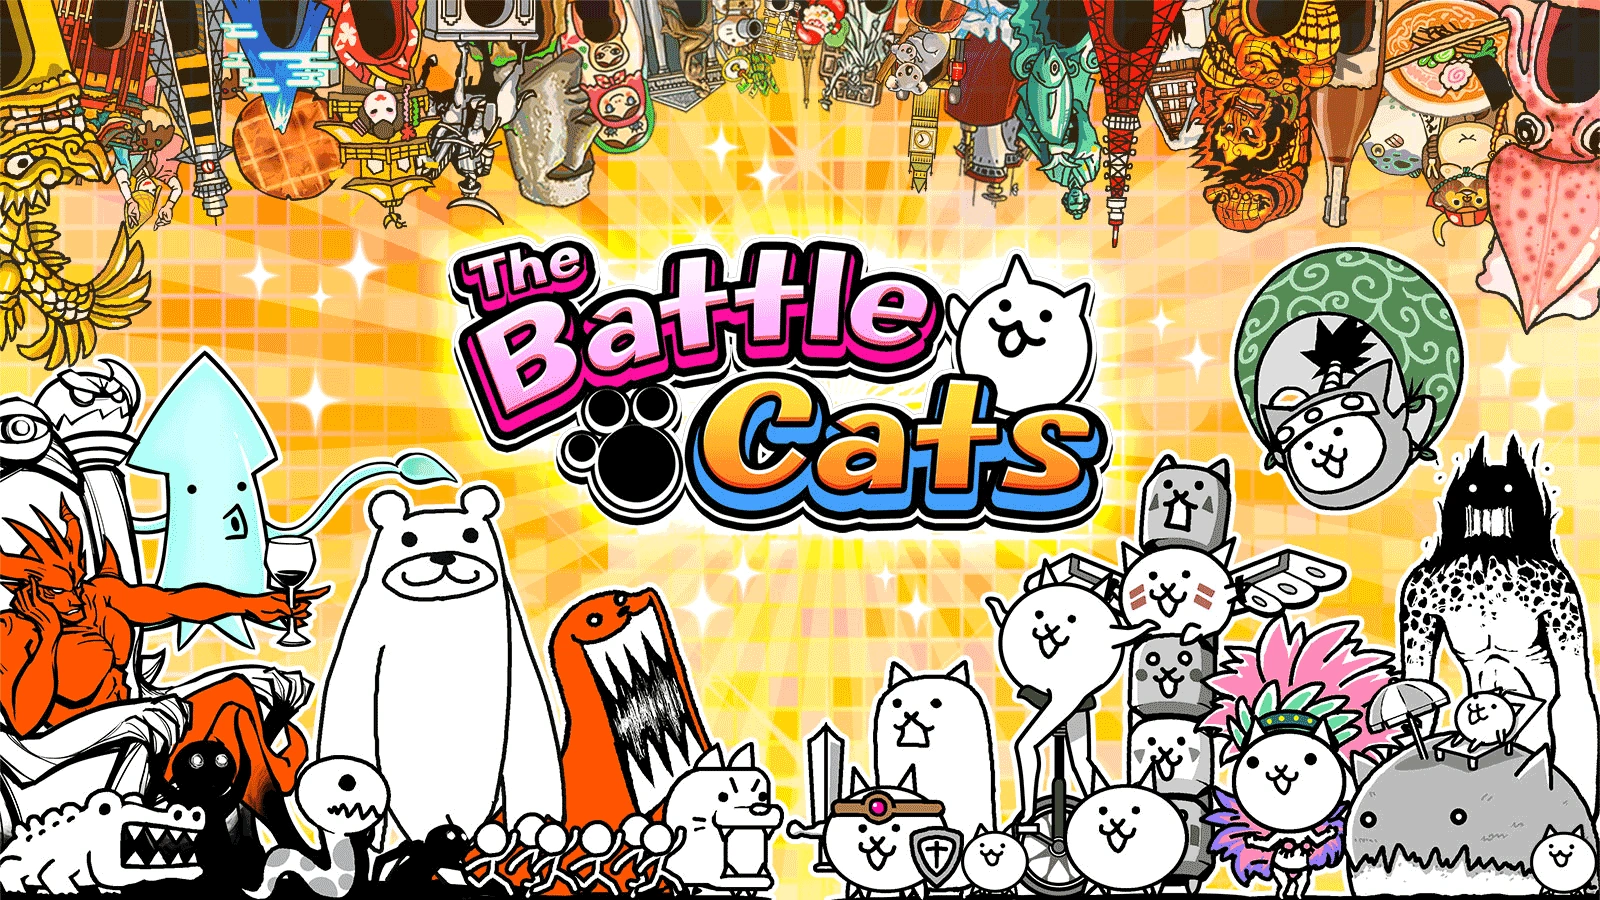 the battle cats mod apk latest version